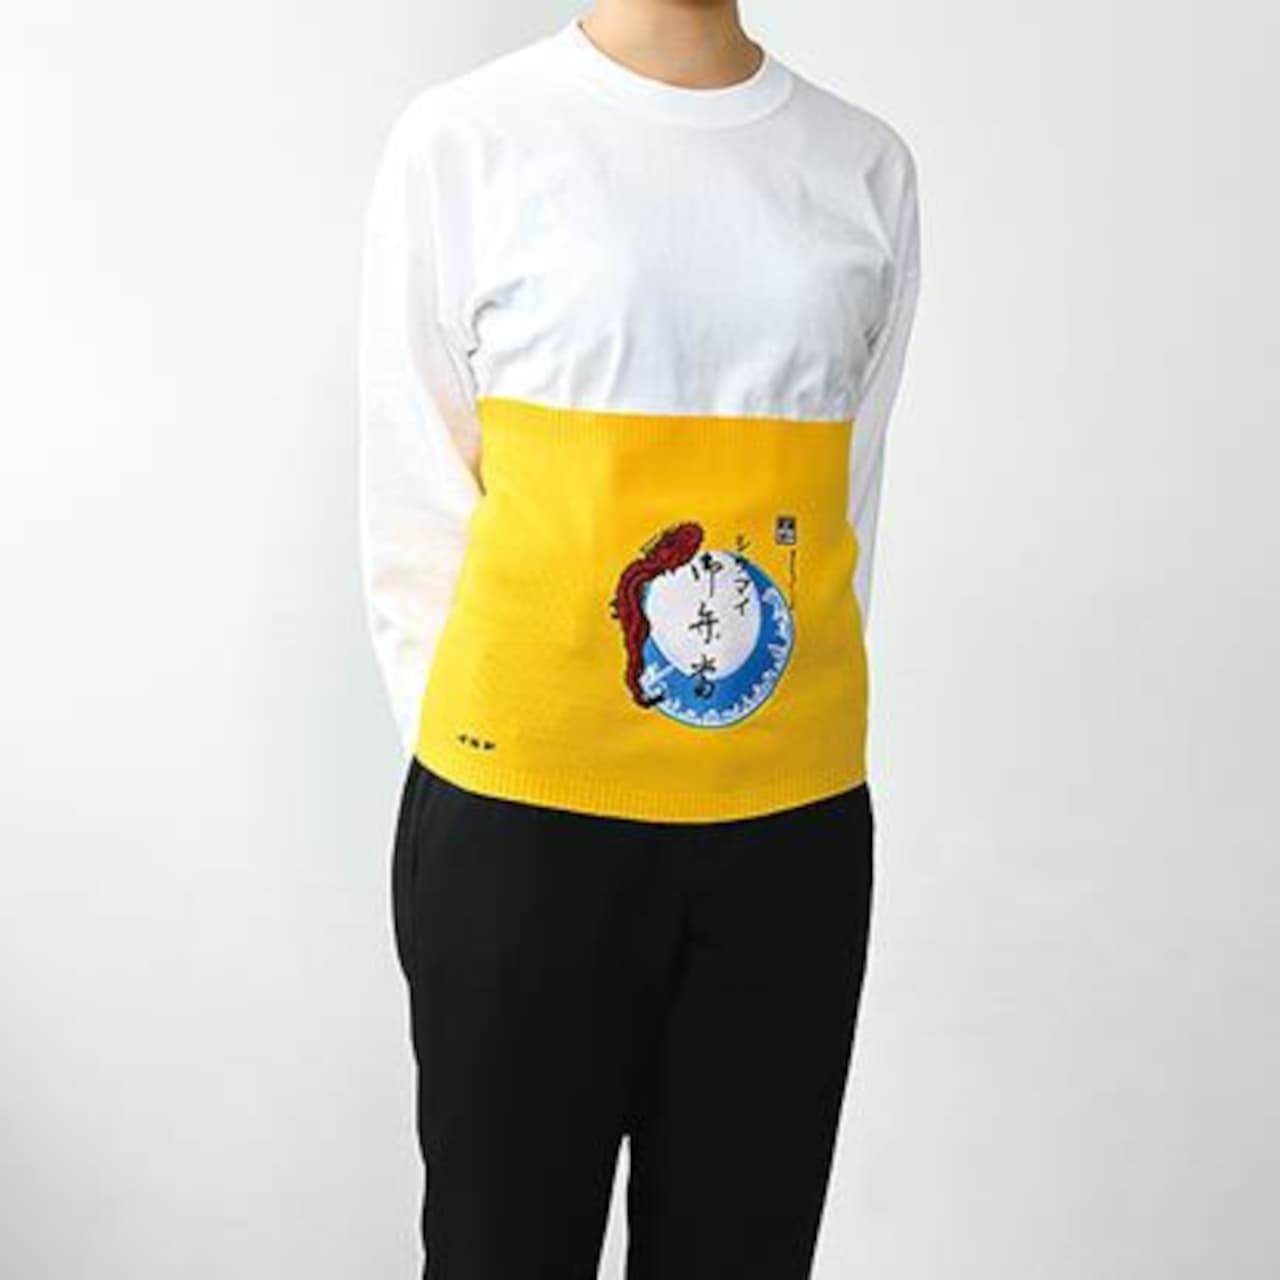 Kiyoken "Seller Happy Style Warm Hanten" "Fashionable Shiumai Bento Belly Roll"